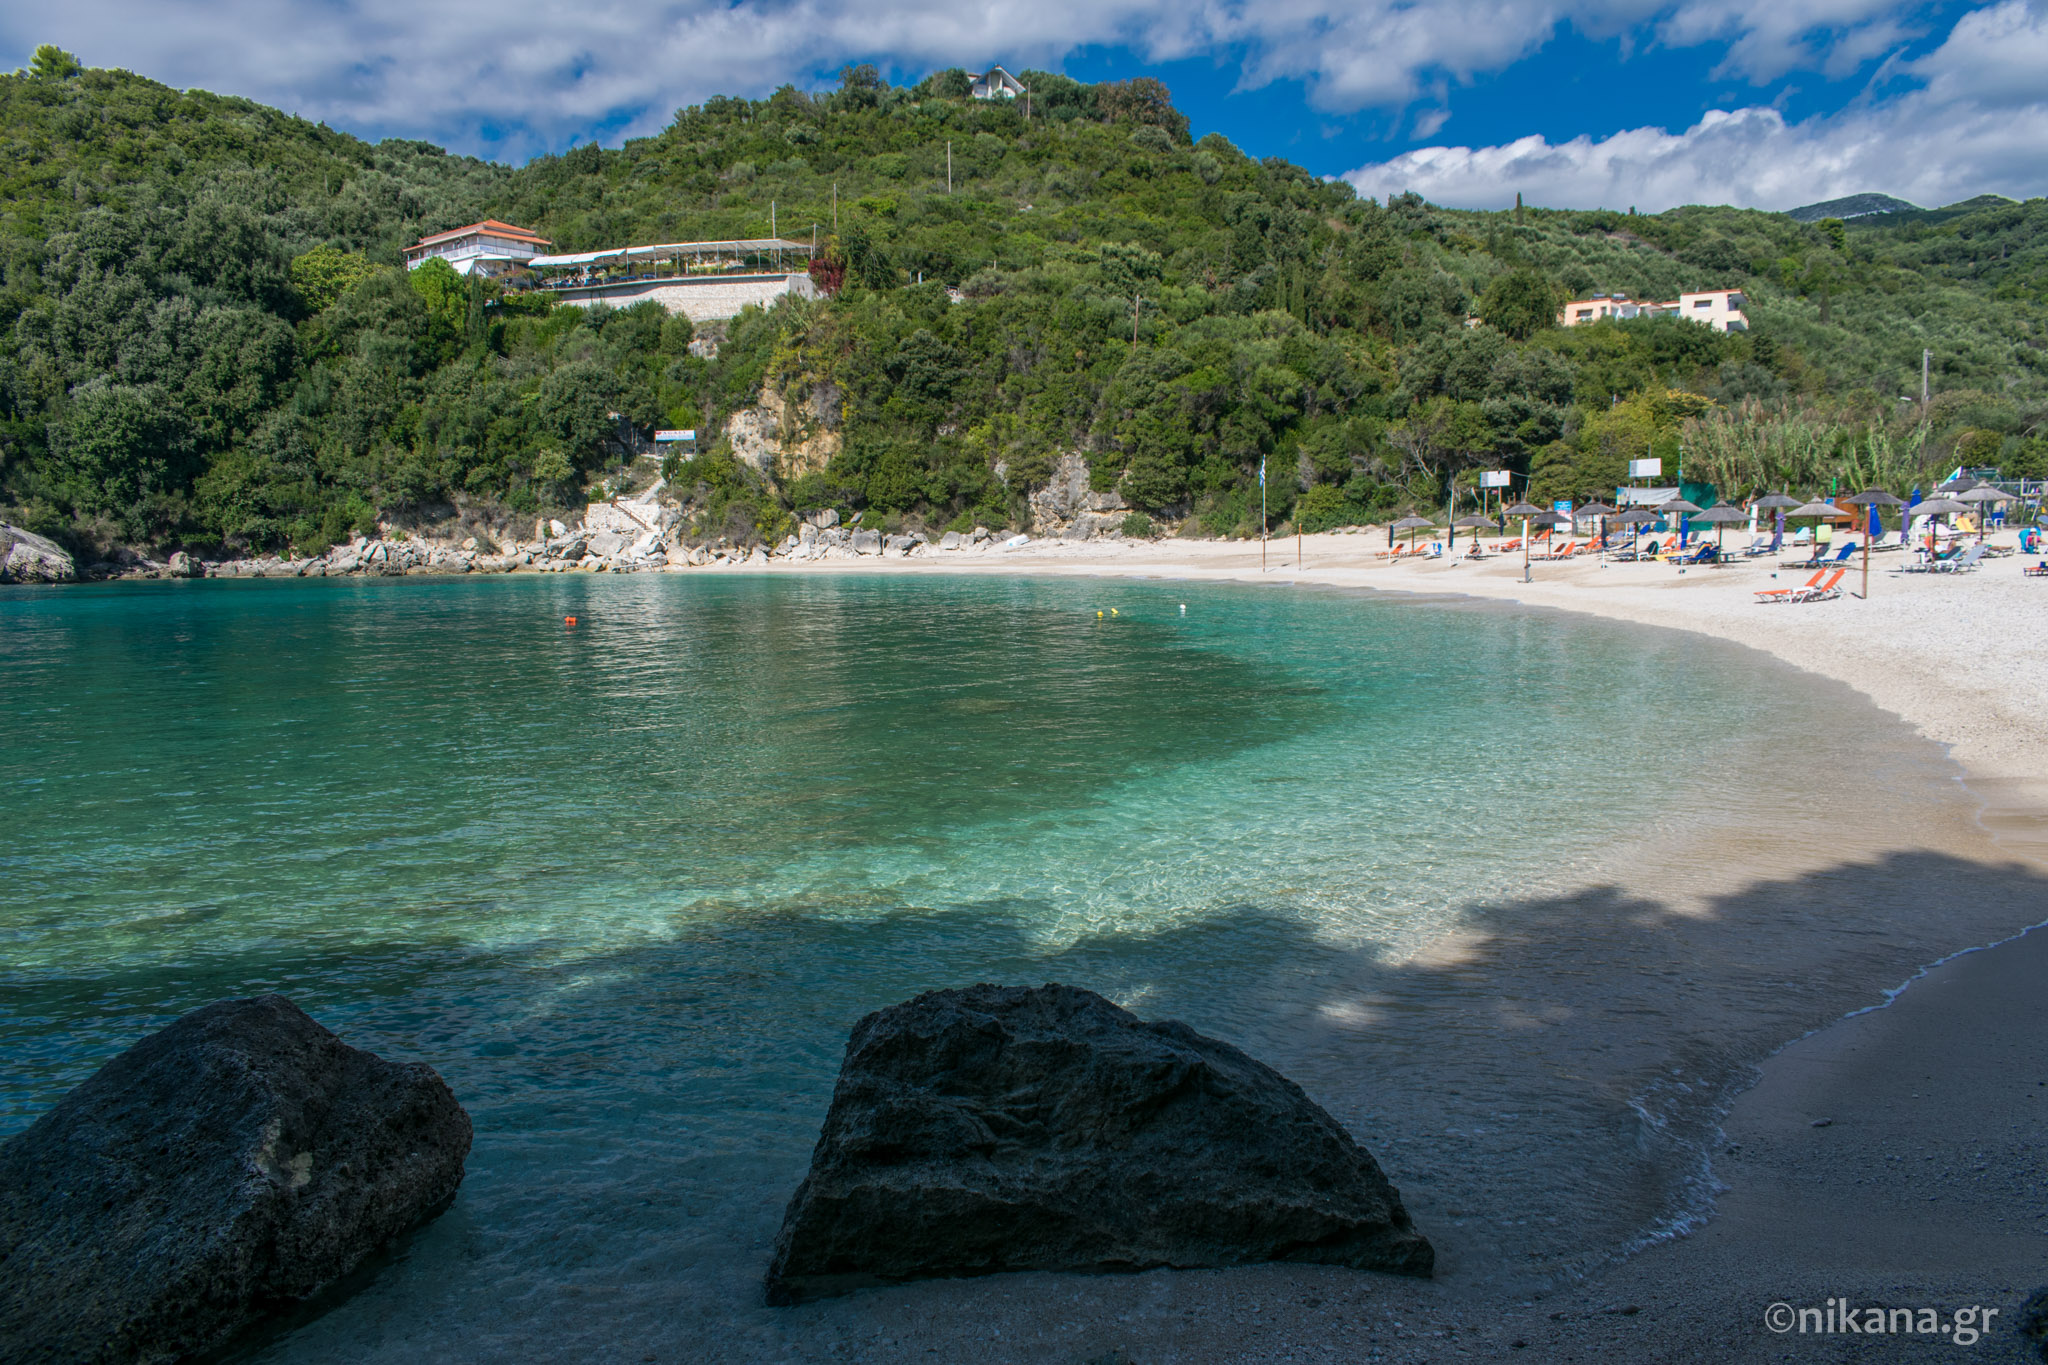 Sarakiniko beach - Epirus beaches| Nikana.gr